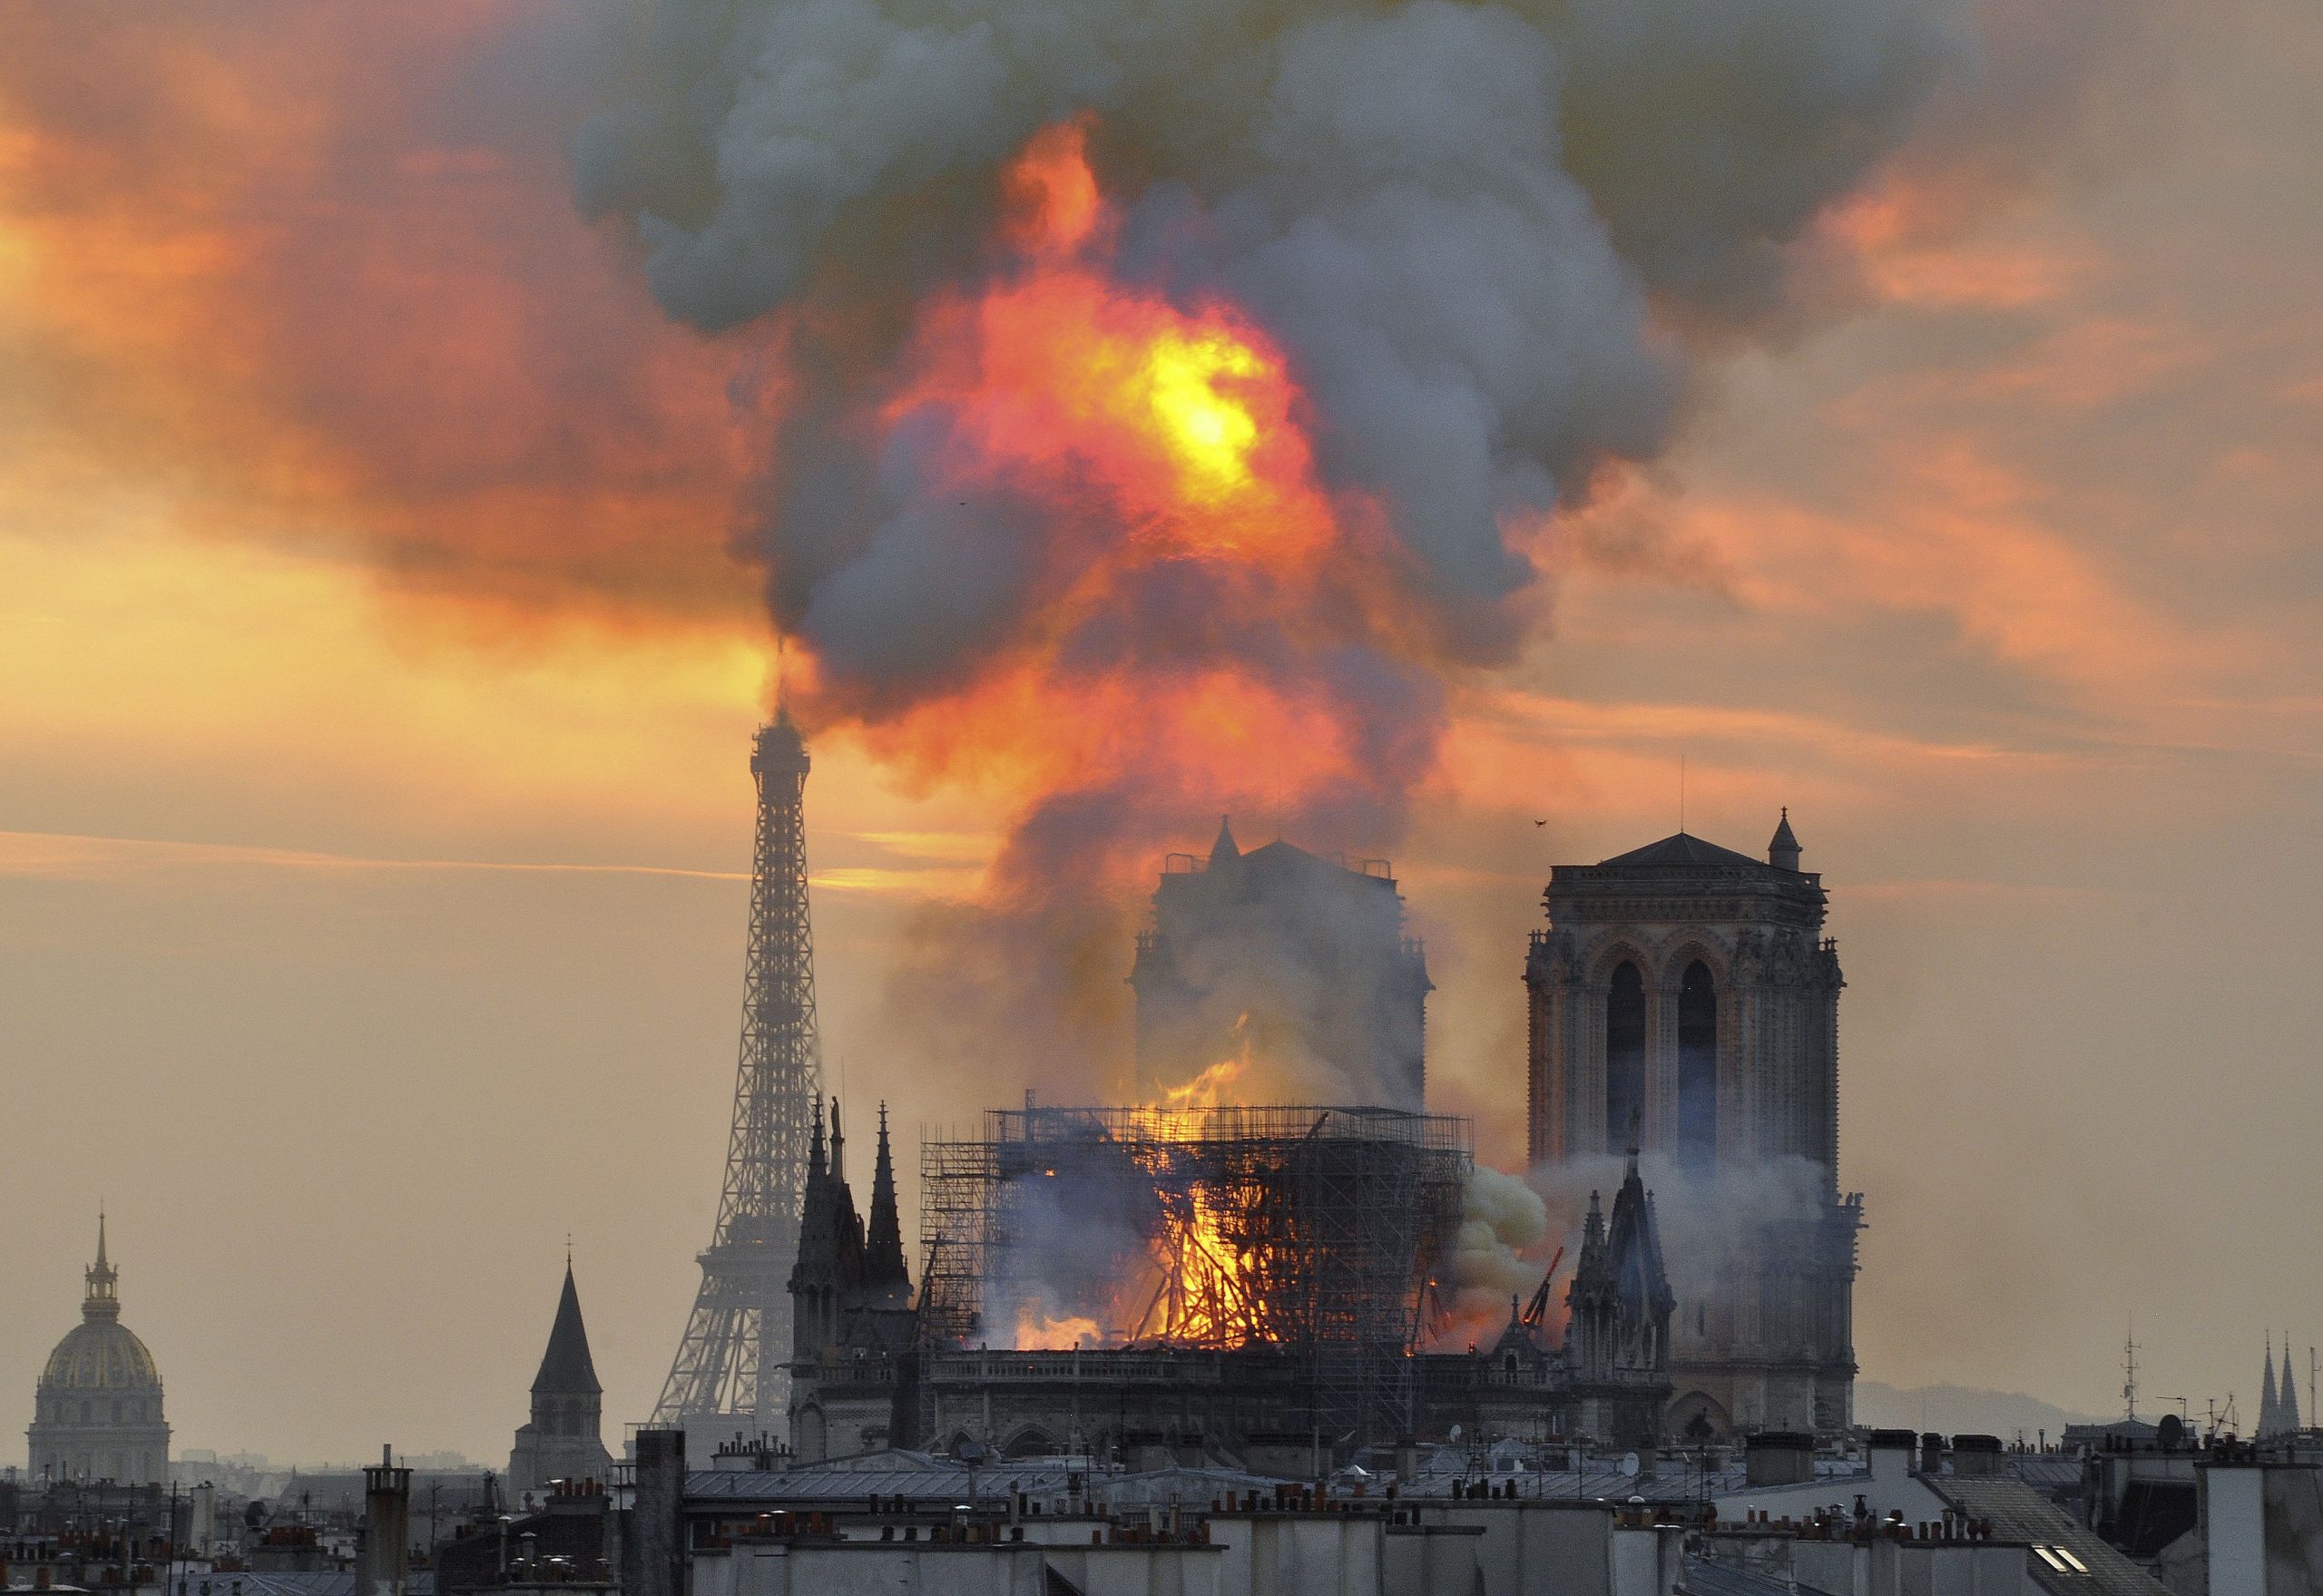 “Data më tragjike” në historinë njerëzore po afron - në këtë ditë ngjarjet e errëta përsëriten me shekuj